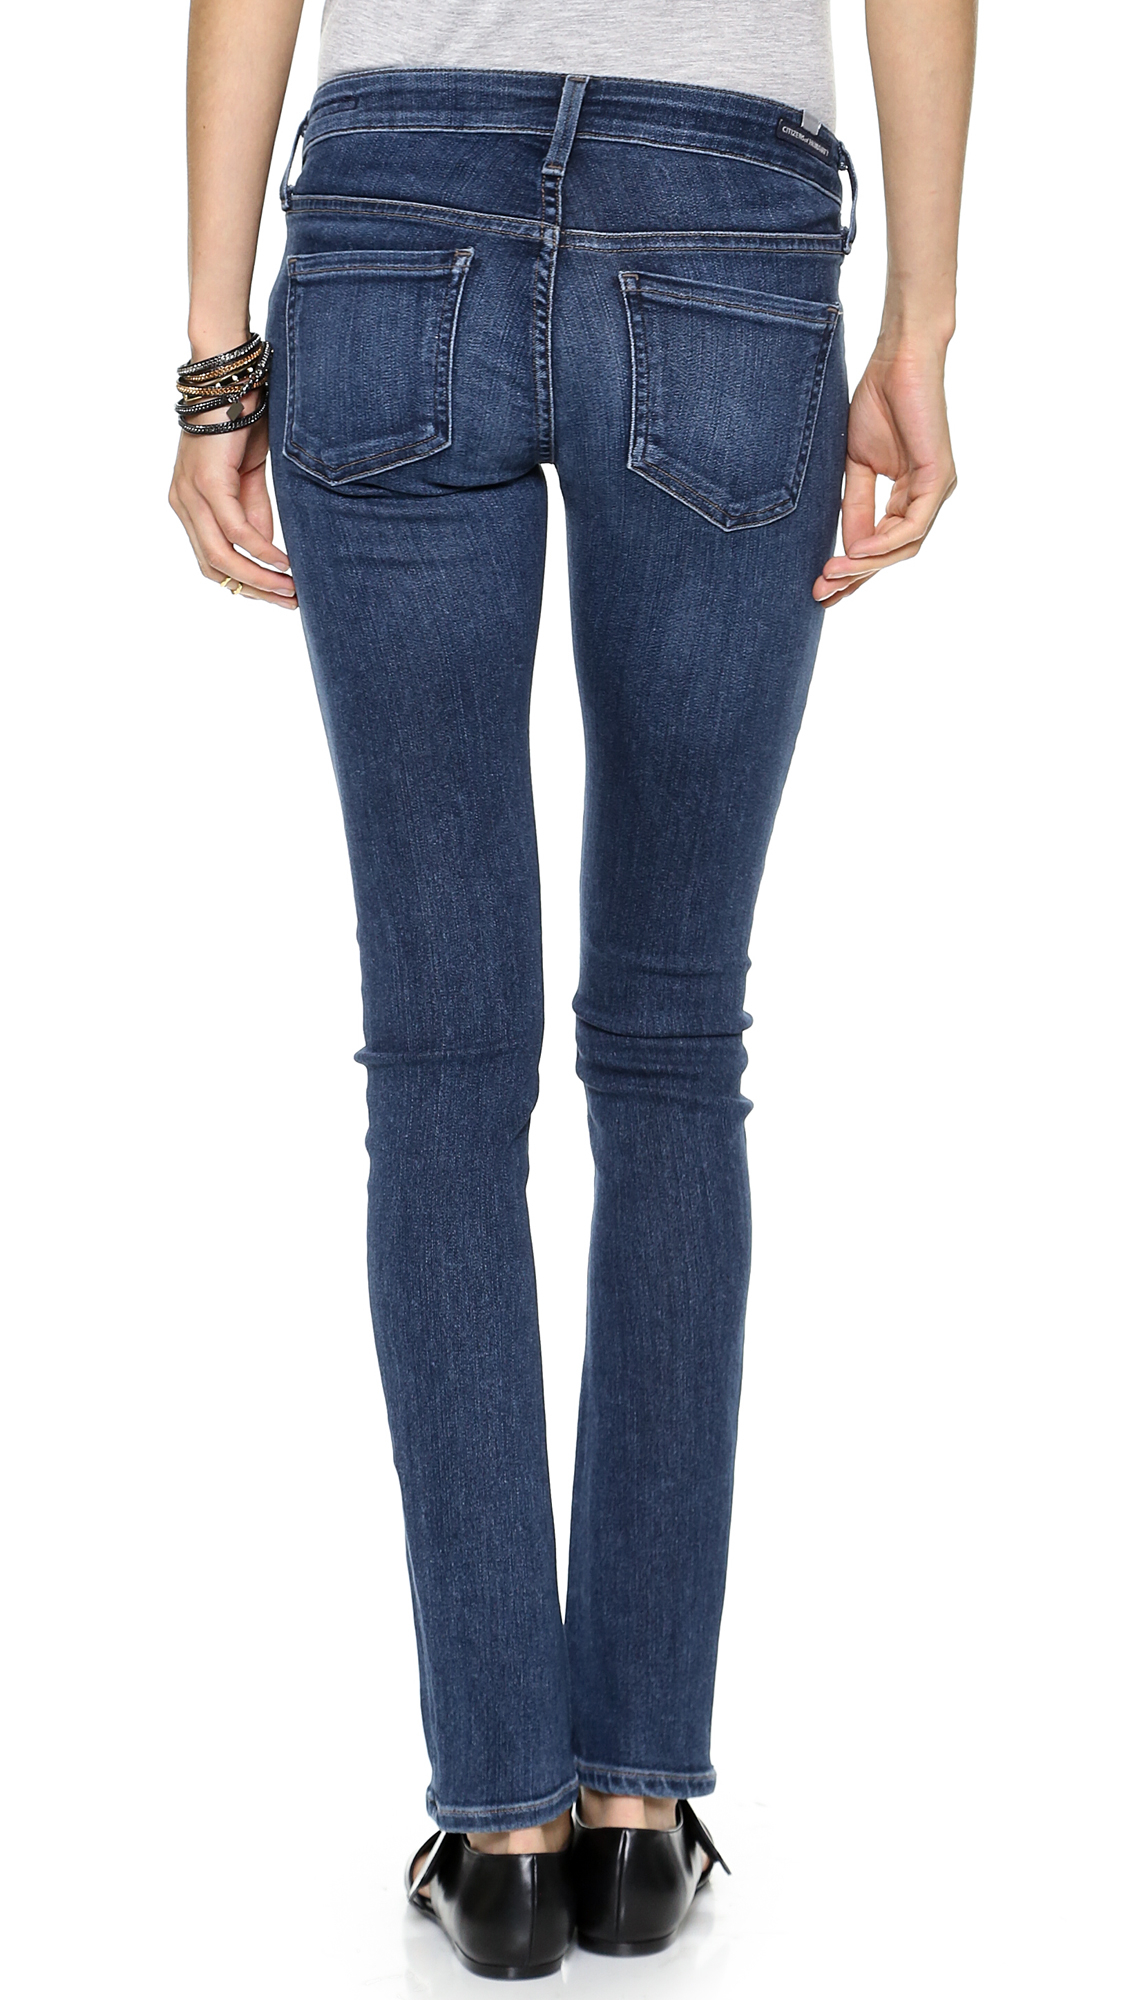 Jeans del citizen skinny - Alta California